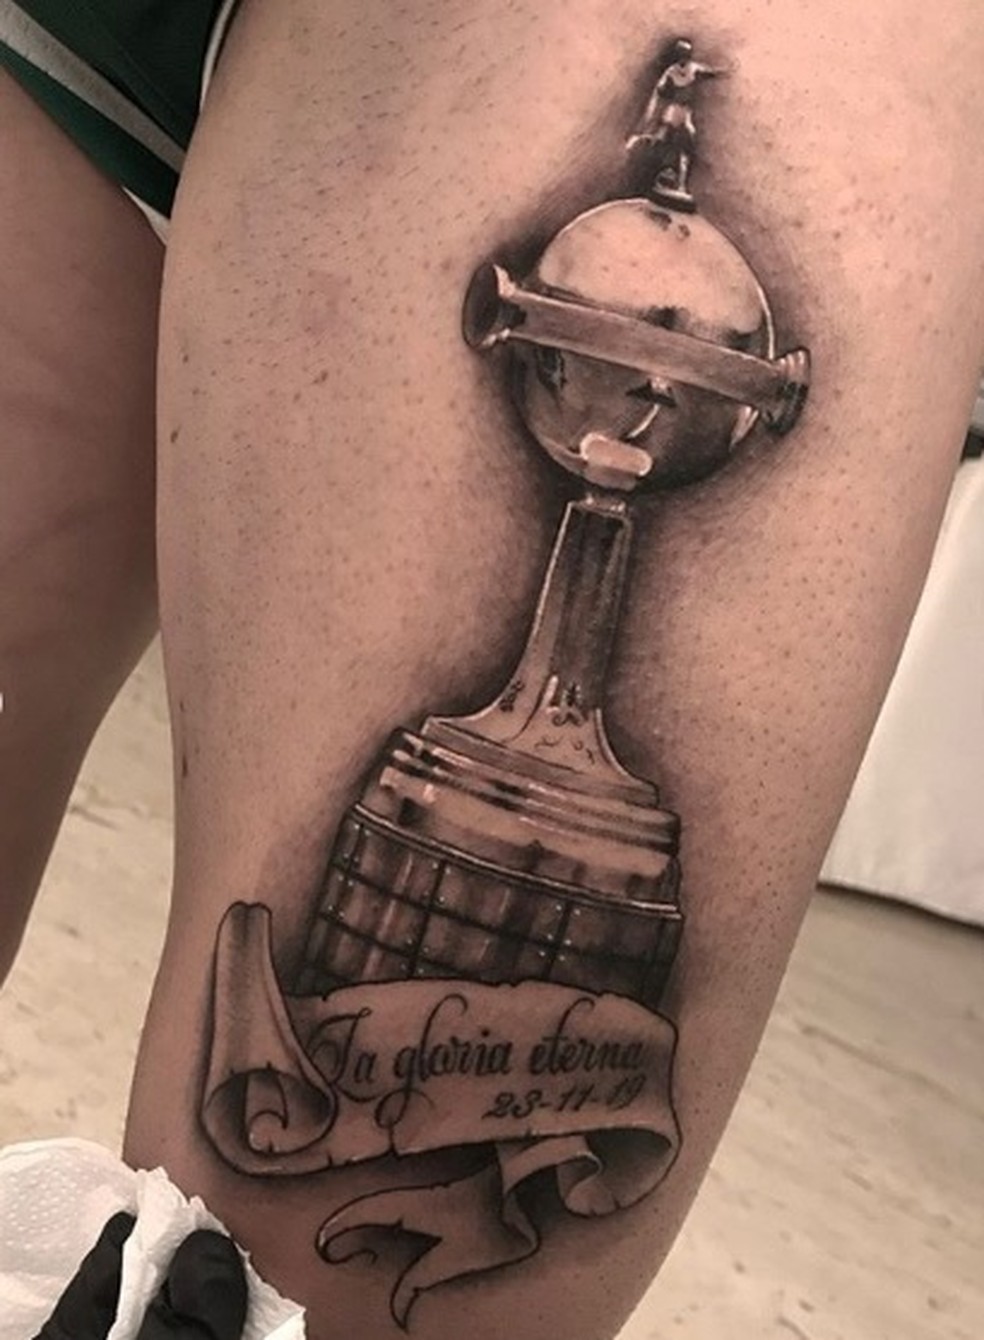 Arrascaeta tatuou na coxa o troféu da Libertadores 2019 — Foto: Reprodução